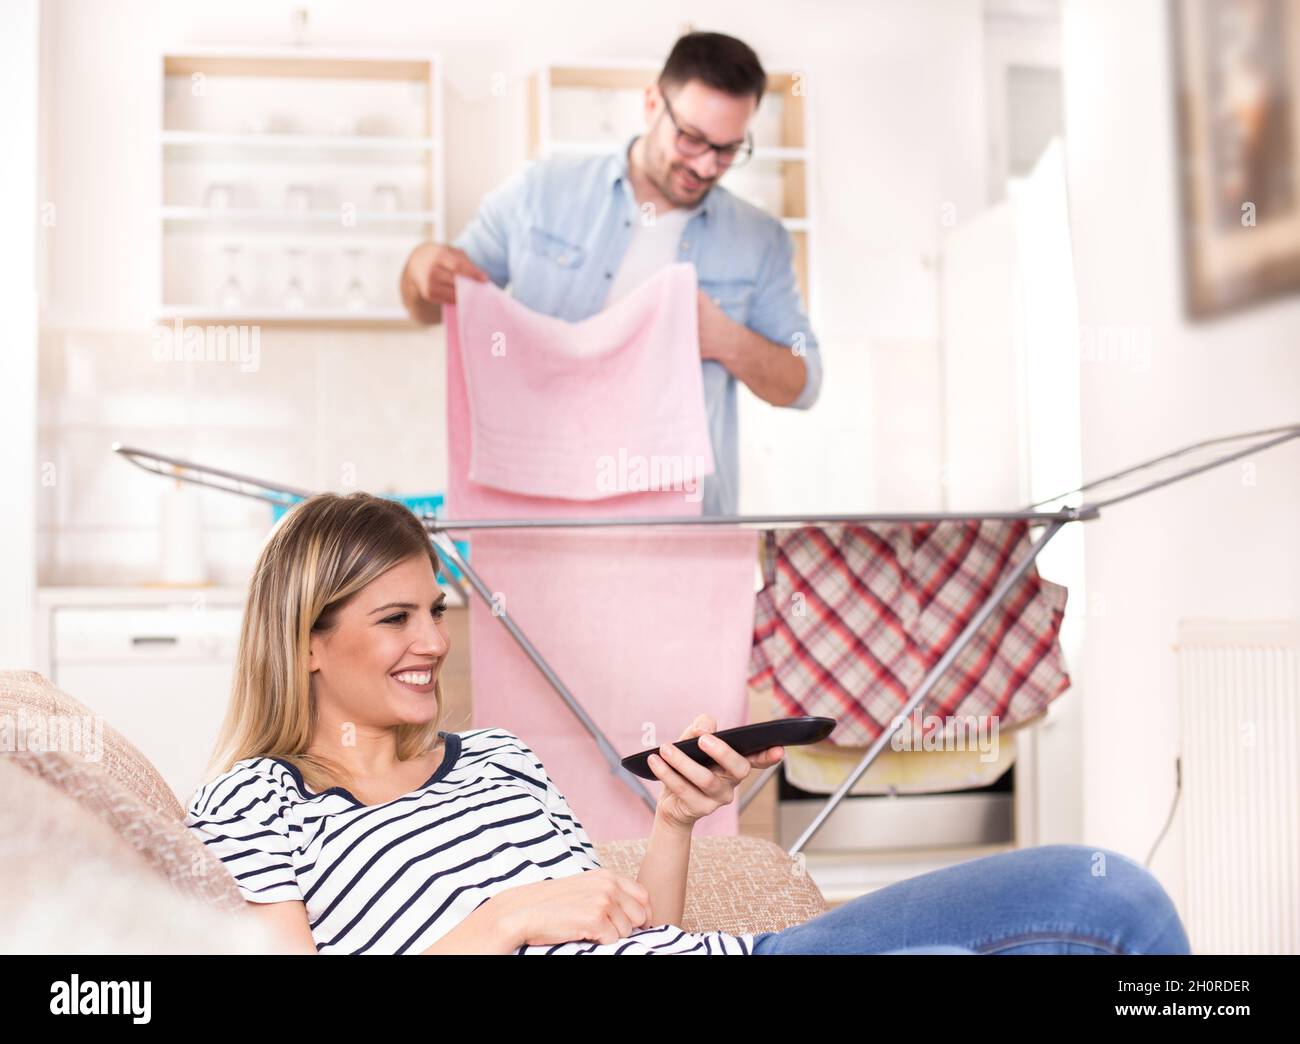 Schöne junge Frau, die sich auf dem Sofa ausruht und fernsieht, während der Mann im Hintergrund seine Wäsche wäschete. Ehemann macht Aufgaben Konzept Stockfoto